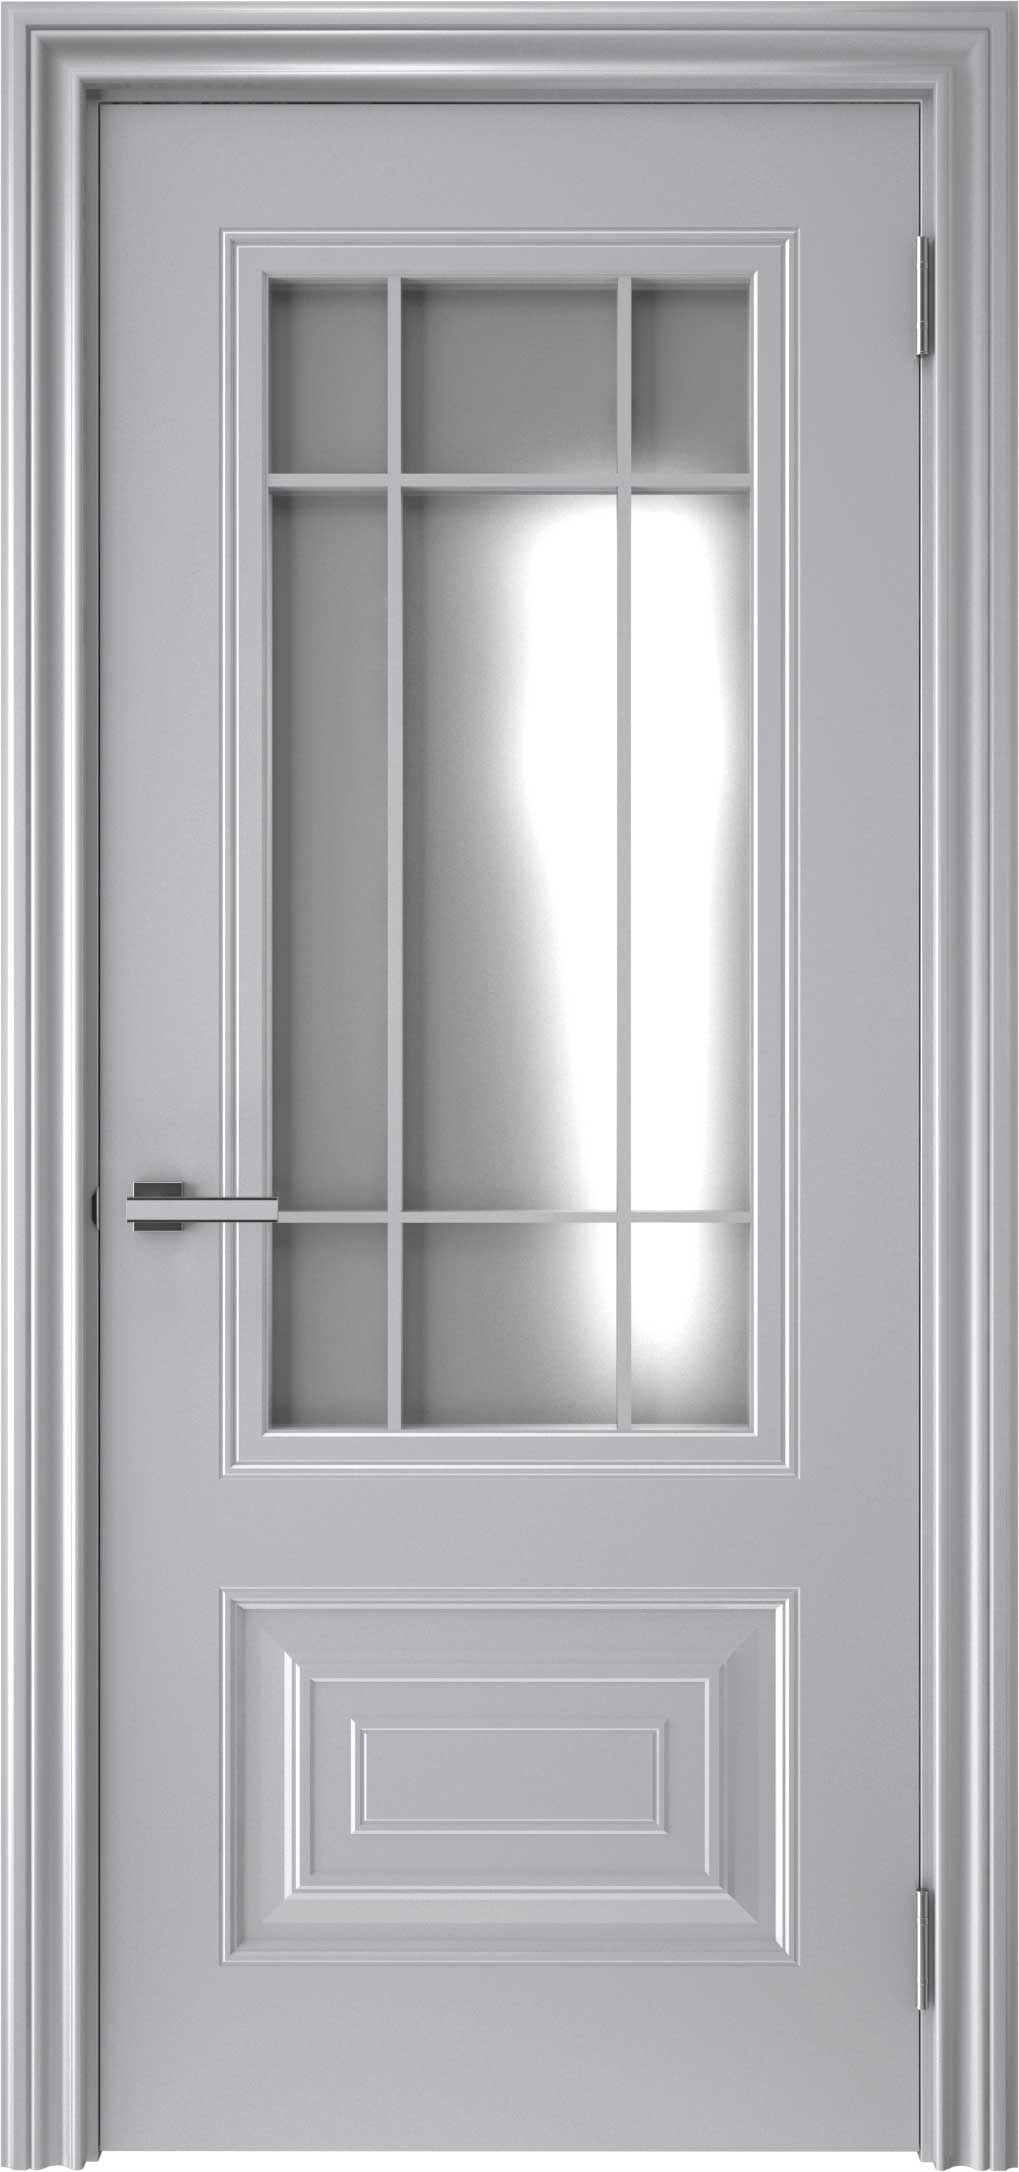 Двери крашеные (Эмаль) ТЕКОНА Смальта-46 со стеклом Серый ral 7036 размер 200 х 80 см. артикул F0000094997